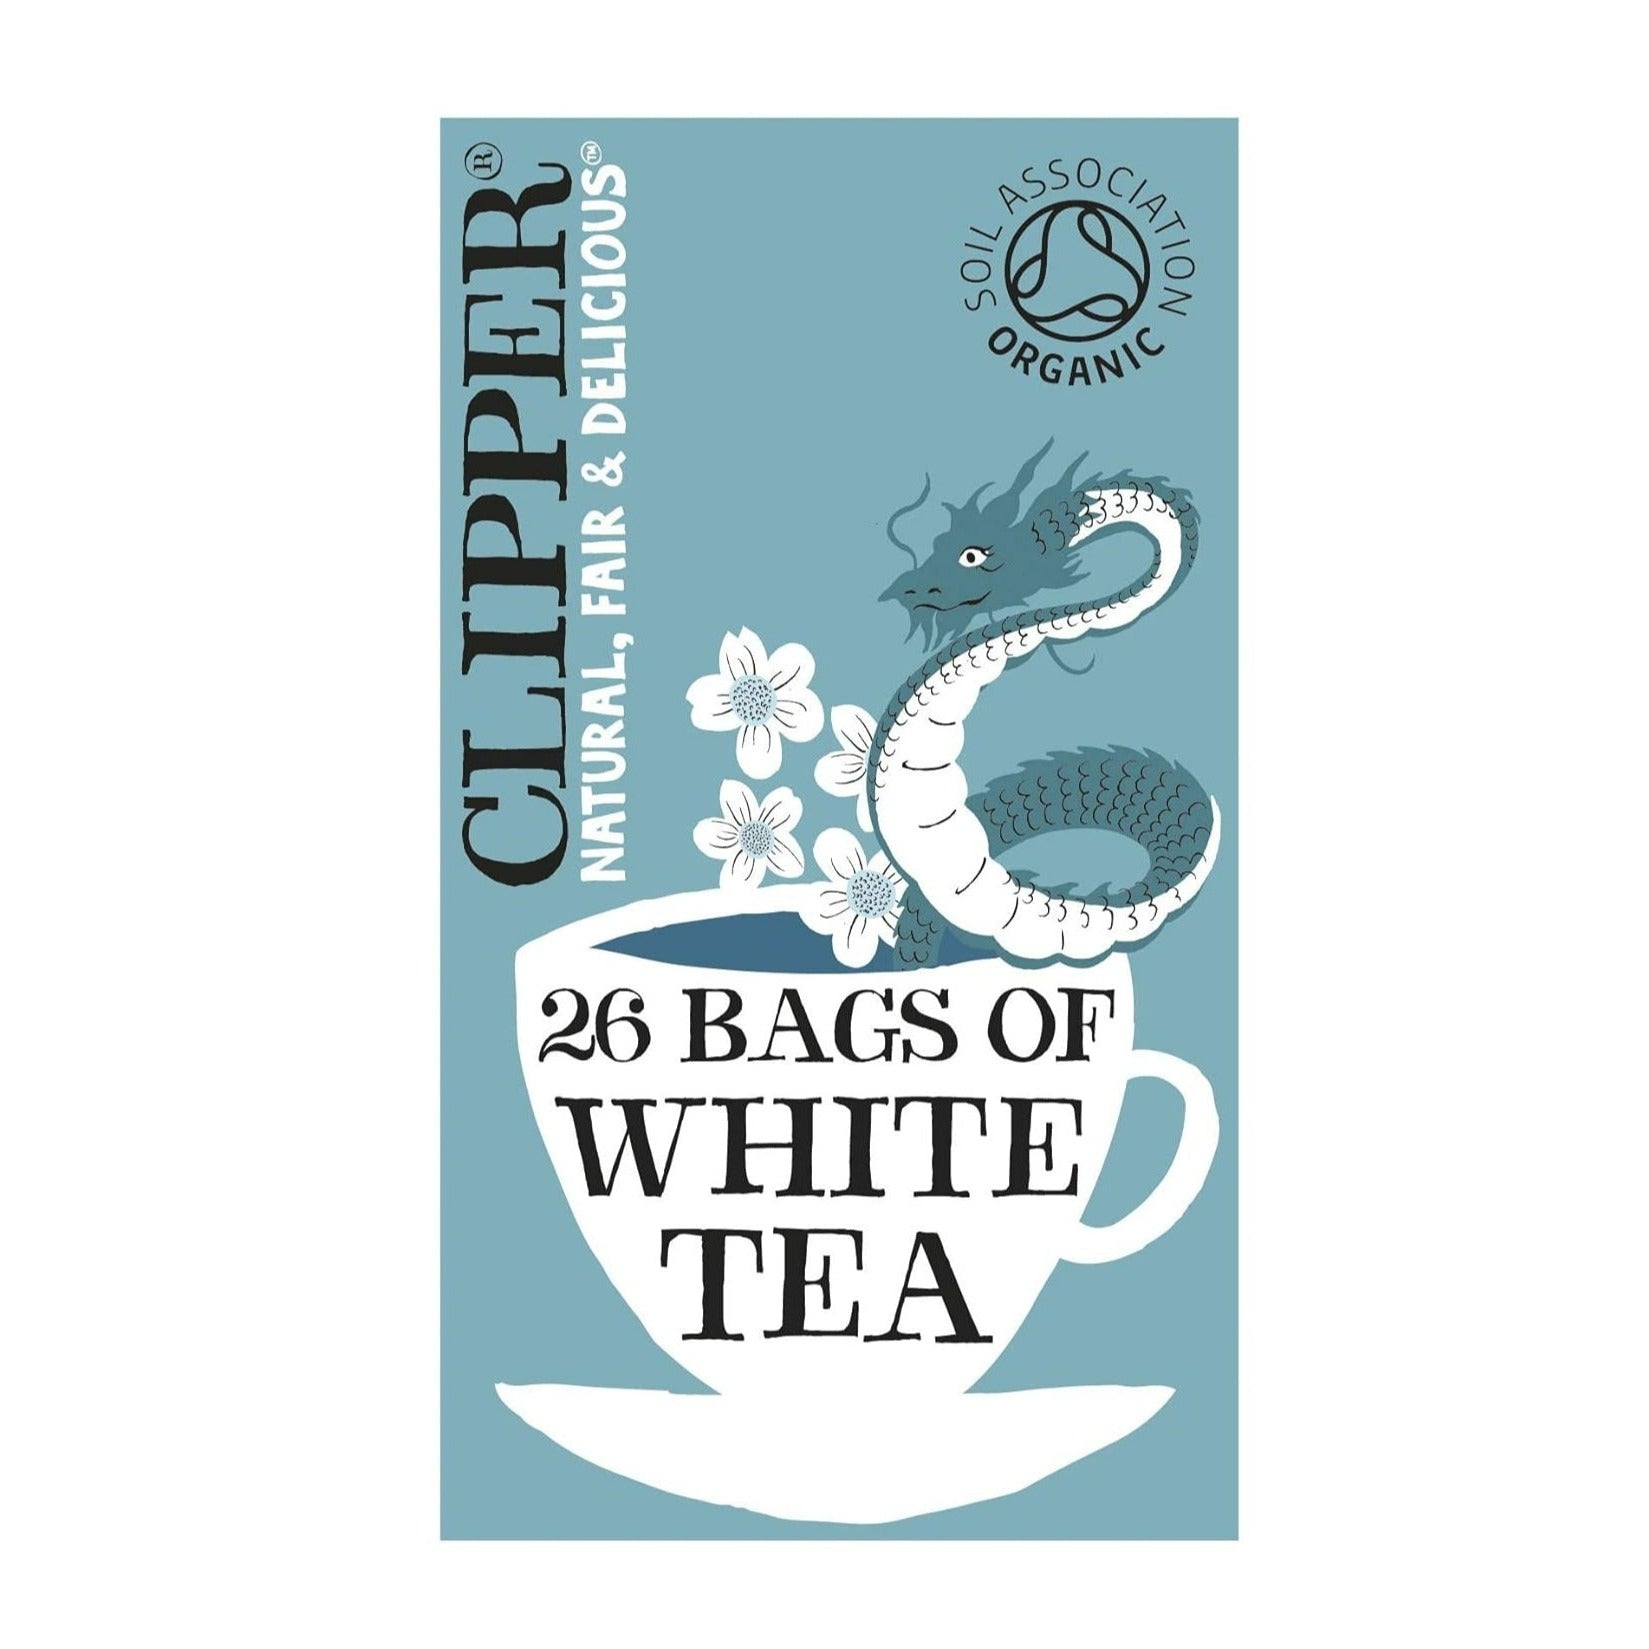 Organic White Tea 26 bags